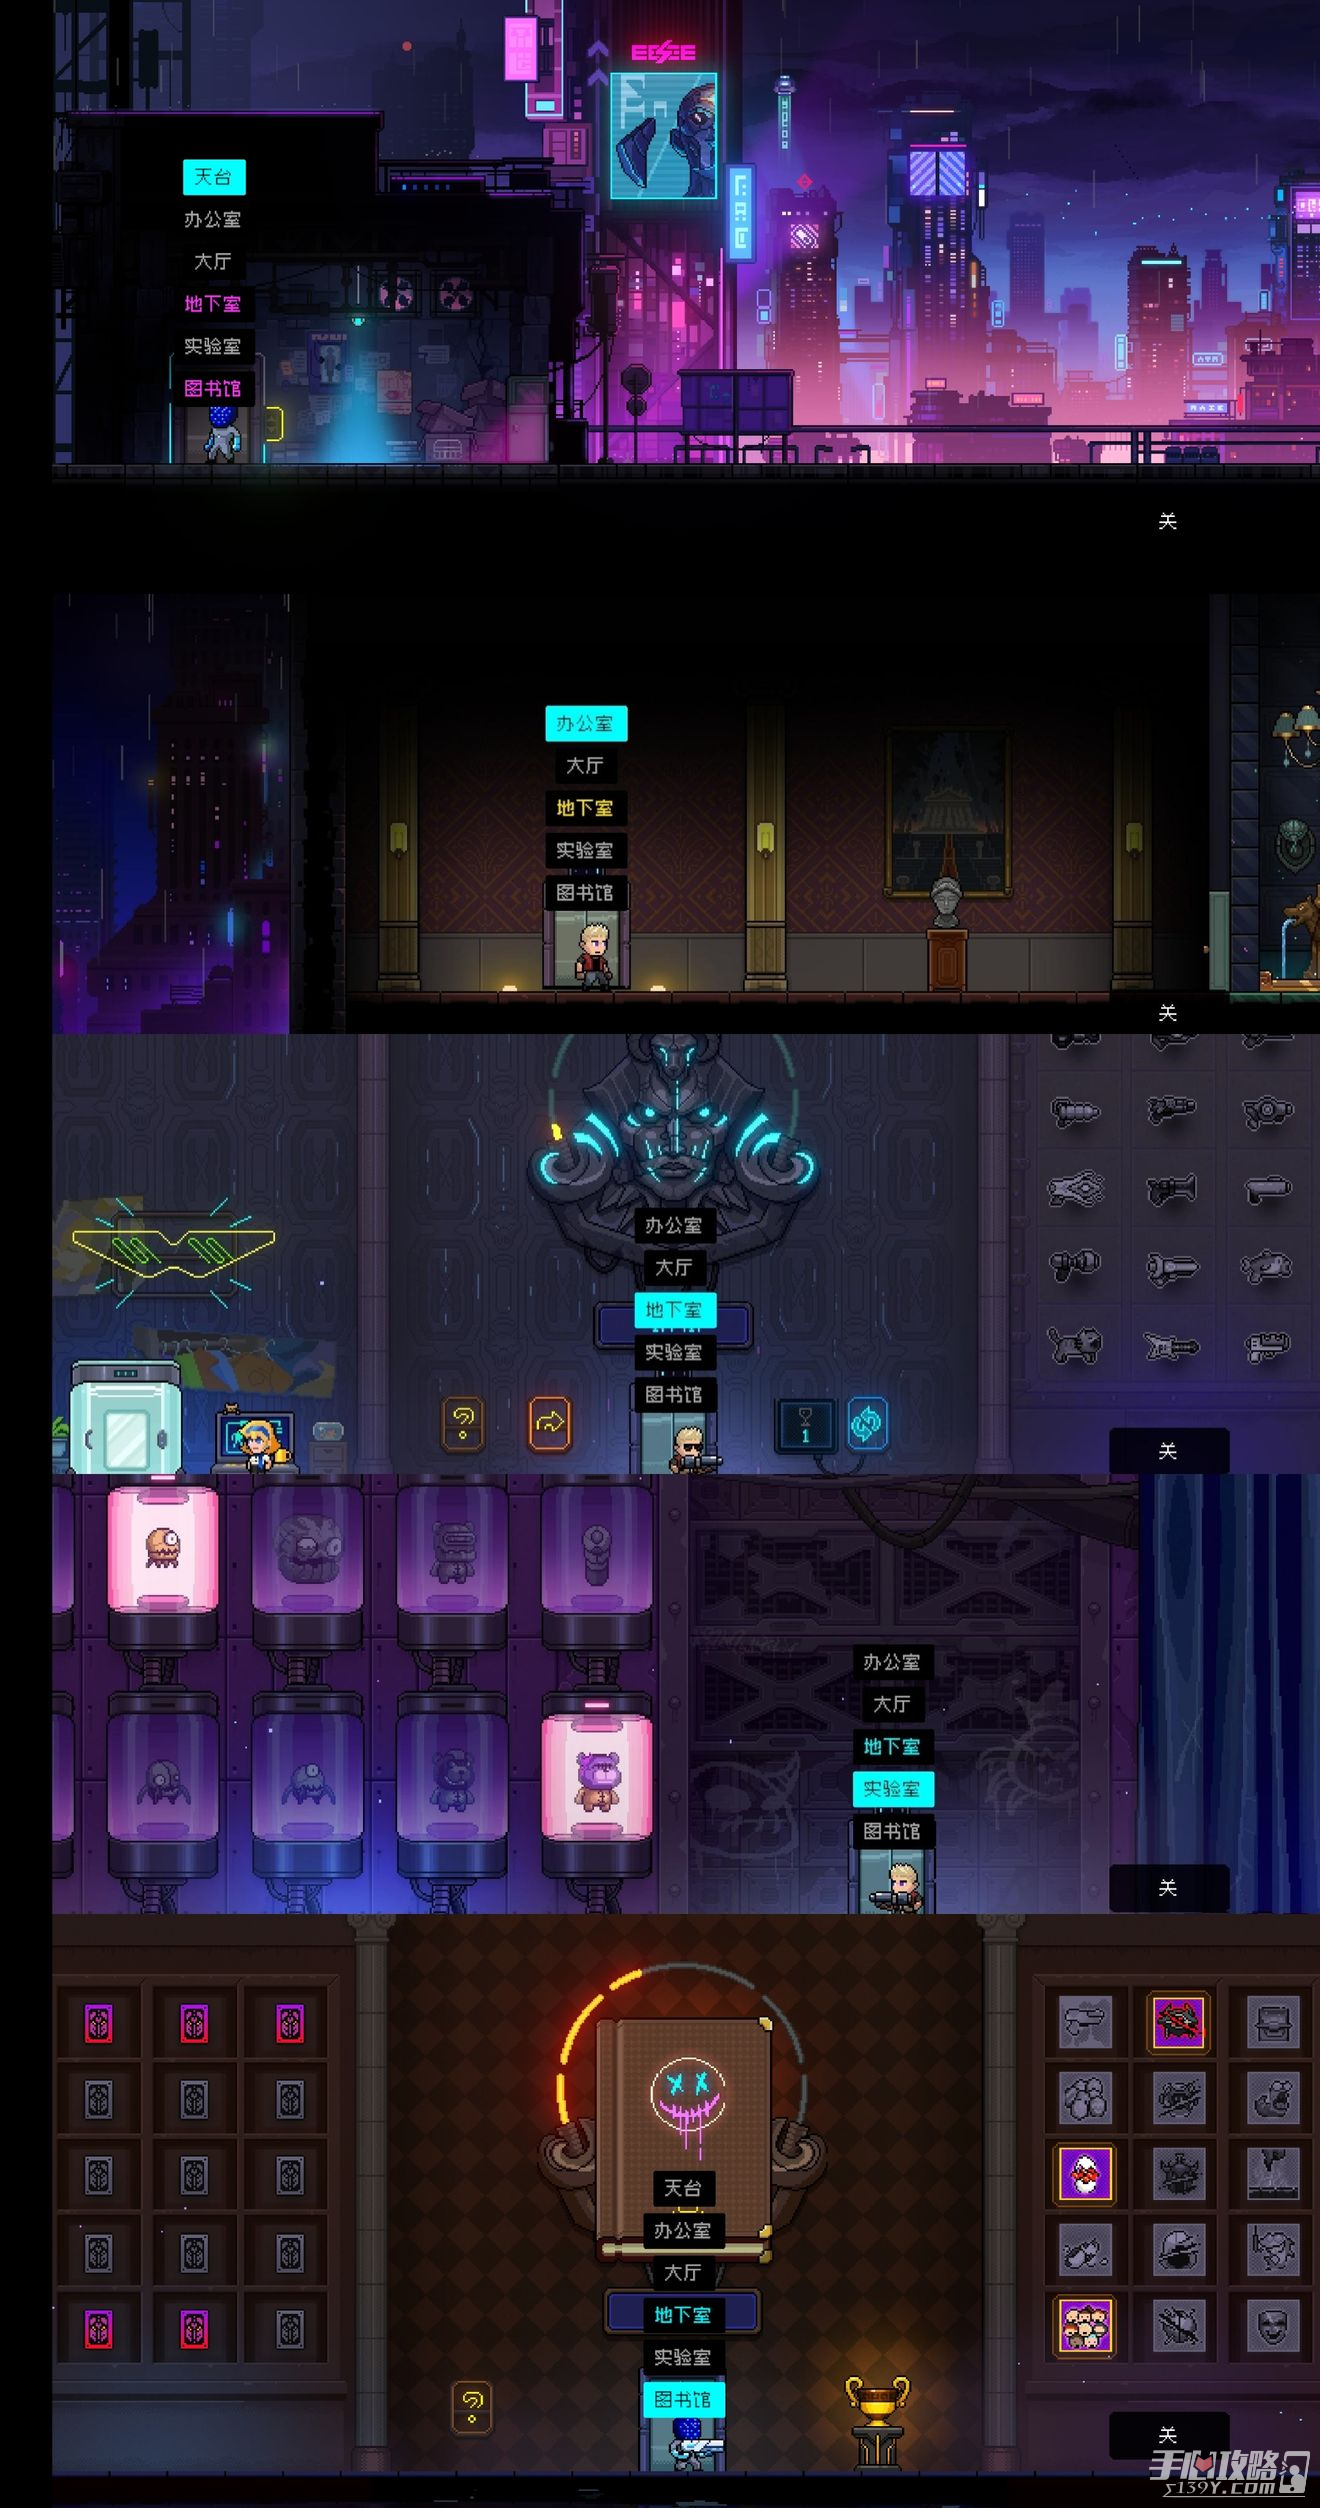 《霓虹深渊无限》游戏大厅所有功能一览